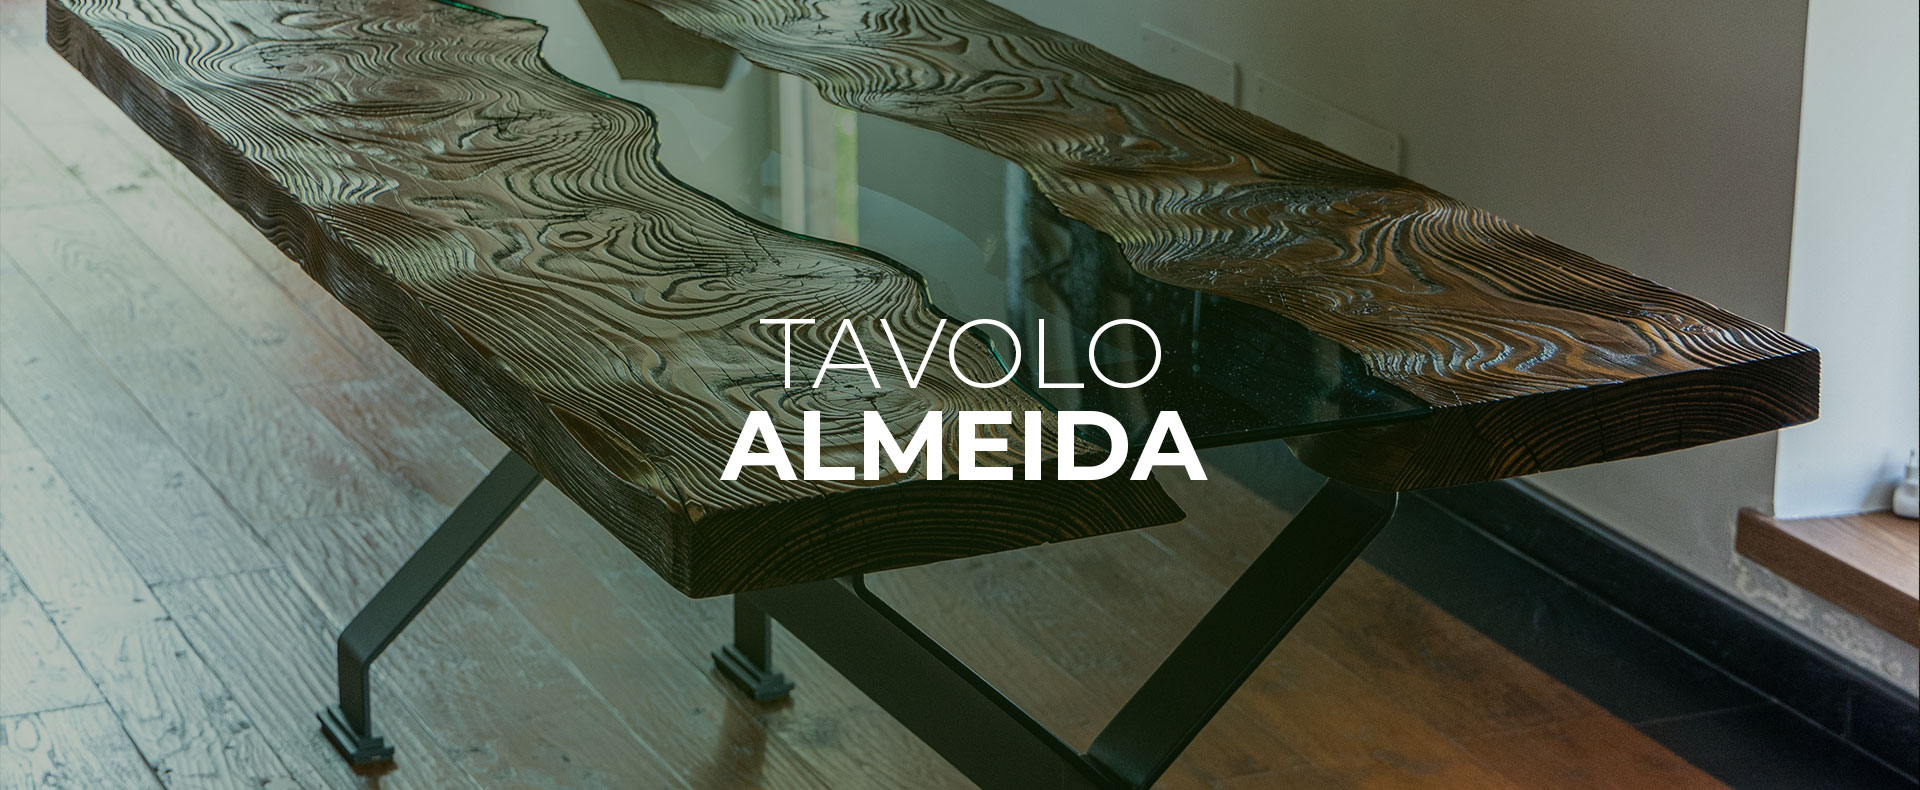 tavolo-almeida-in-legno-vetro-soffiato-e-ferro-stile-industrial-industriale-velletri-roma-provincia